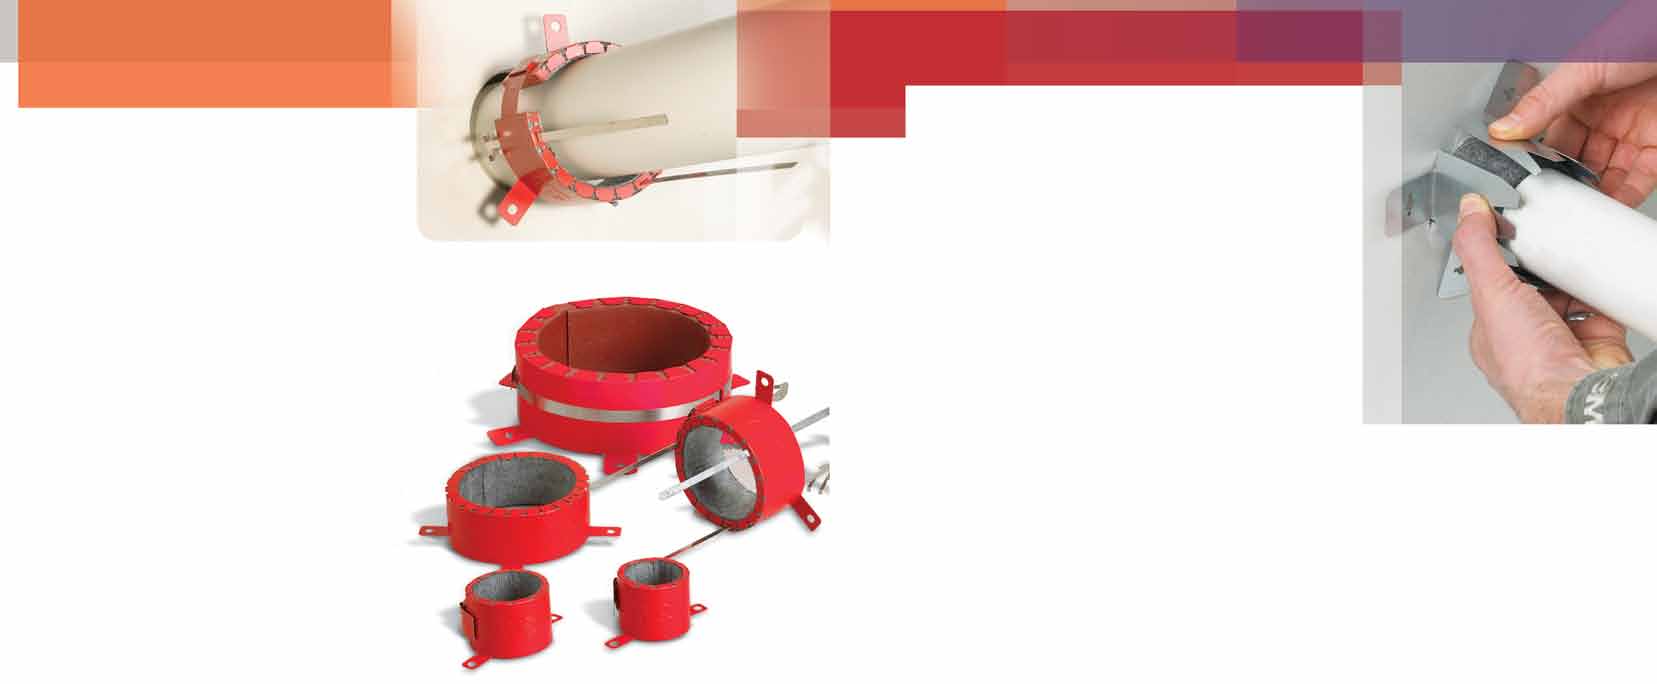 Strisce avvolgibili e collari restrigibili 3M Fire Barrier Collari restrigibili RC-1 Da utilizzare co le le strisce itumesceti, per tubi i plastica fio a 254 mm di diametro.